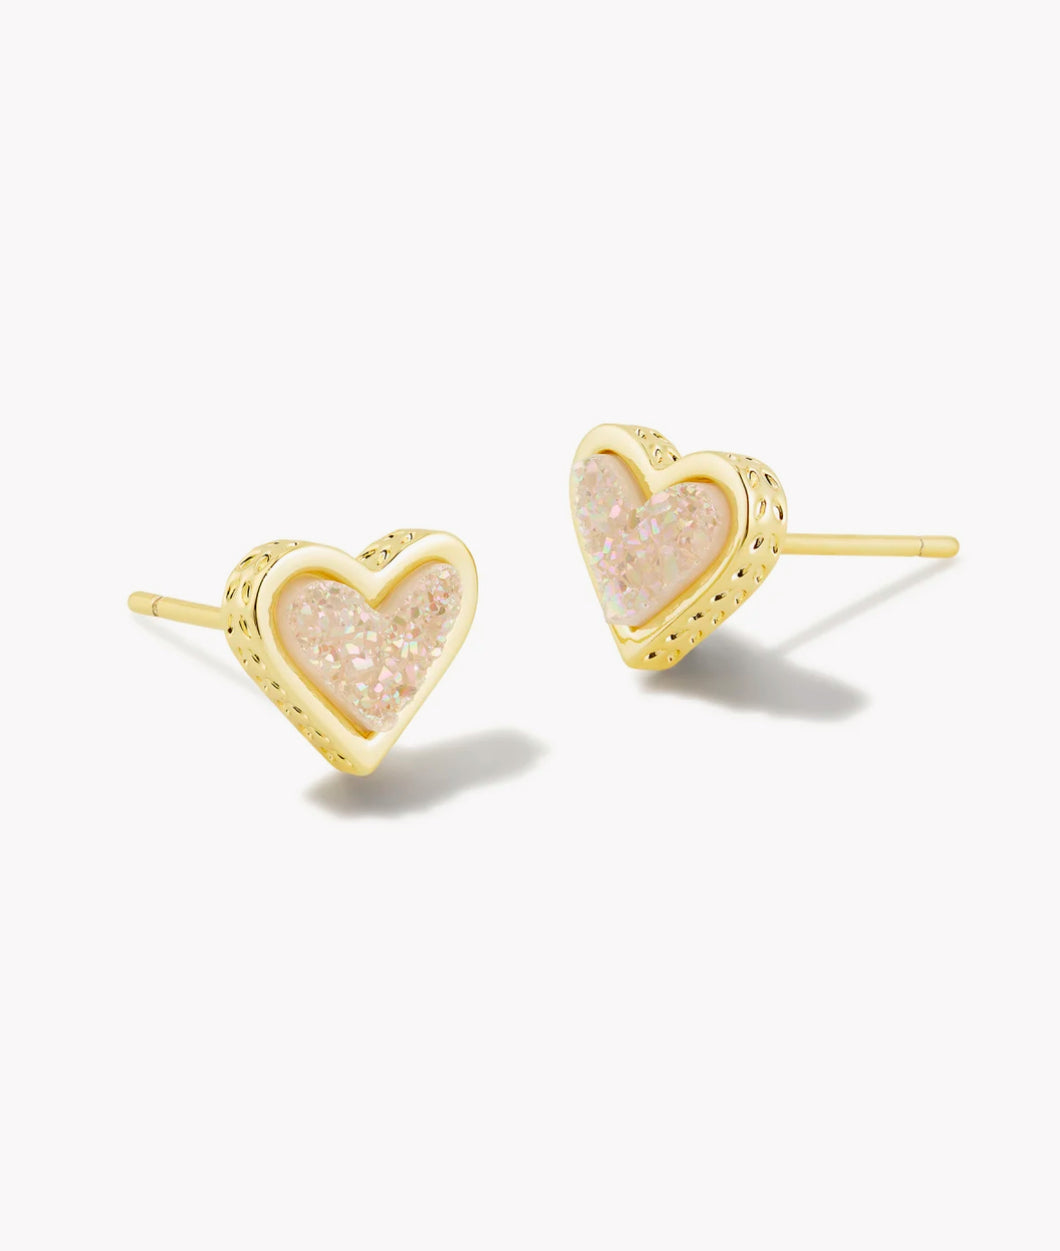 Kendra Scott: Framed Ari Heart Gold Stud Earrings in Iridescent Drusy